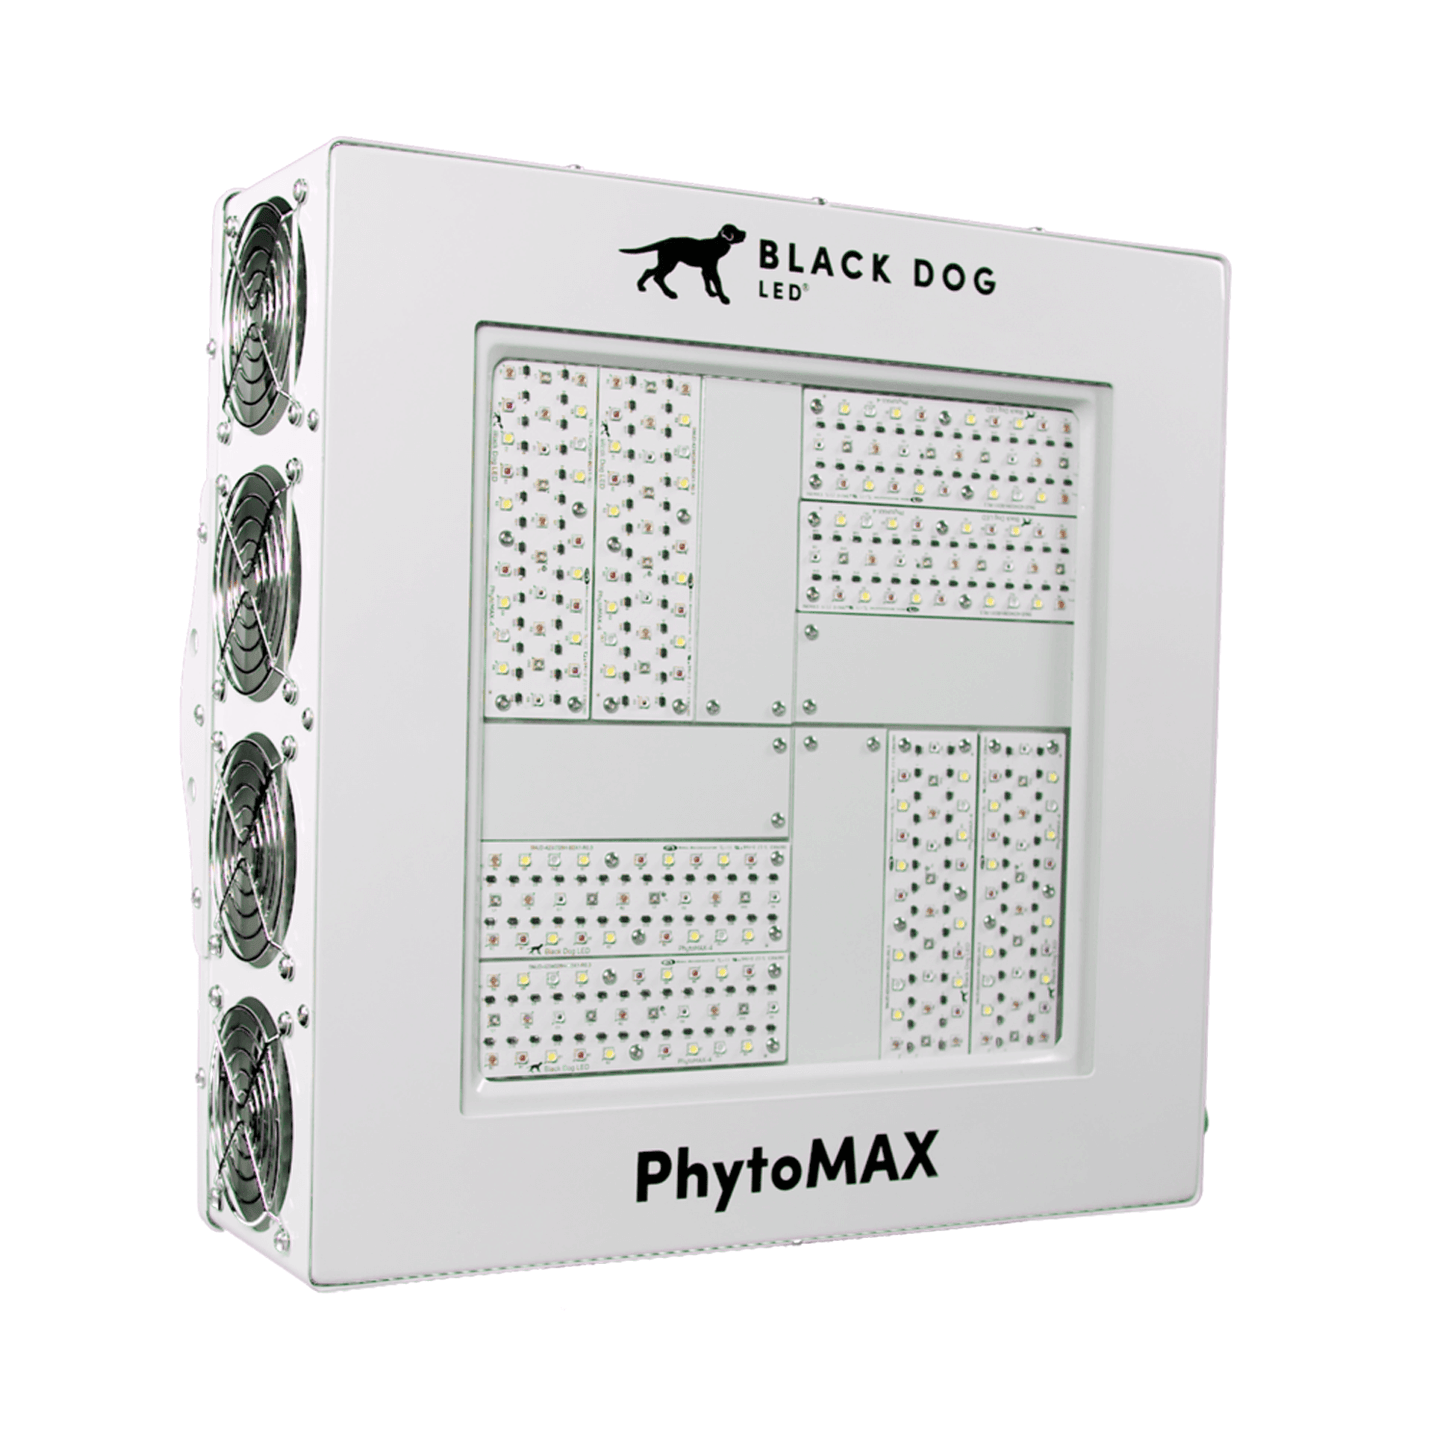 Black Dog LED PhytoMAX-4 8SC 500W LED Grow Light BD001-0110 Grow Lights 701919640041